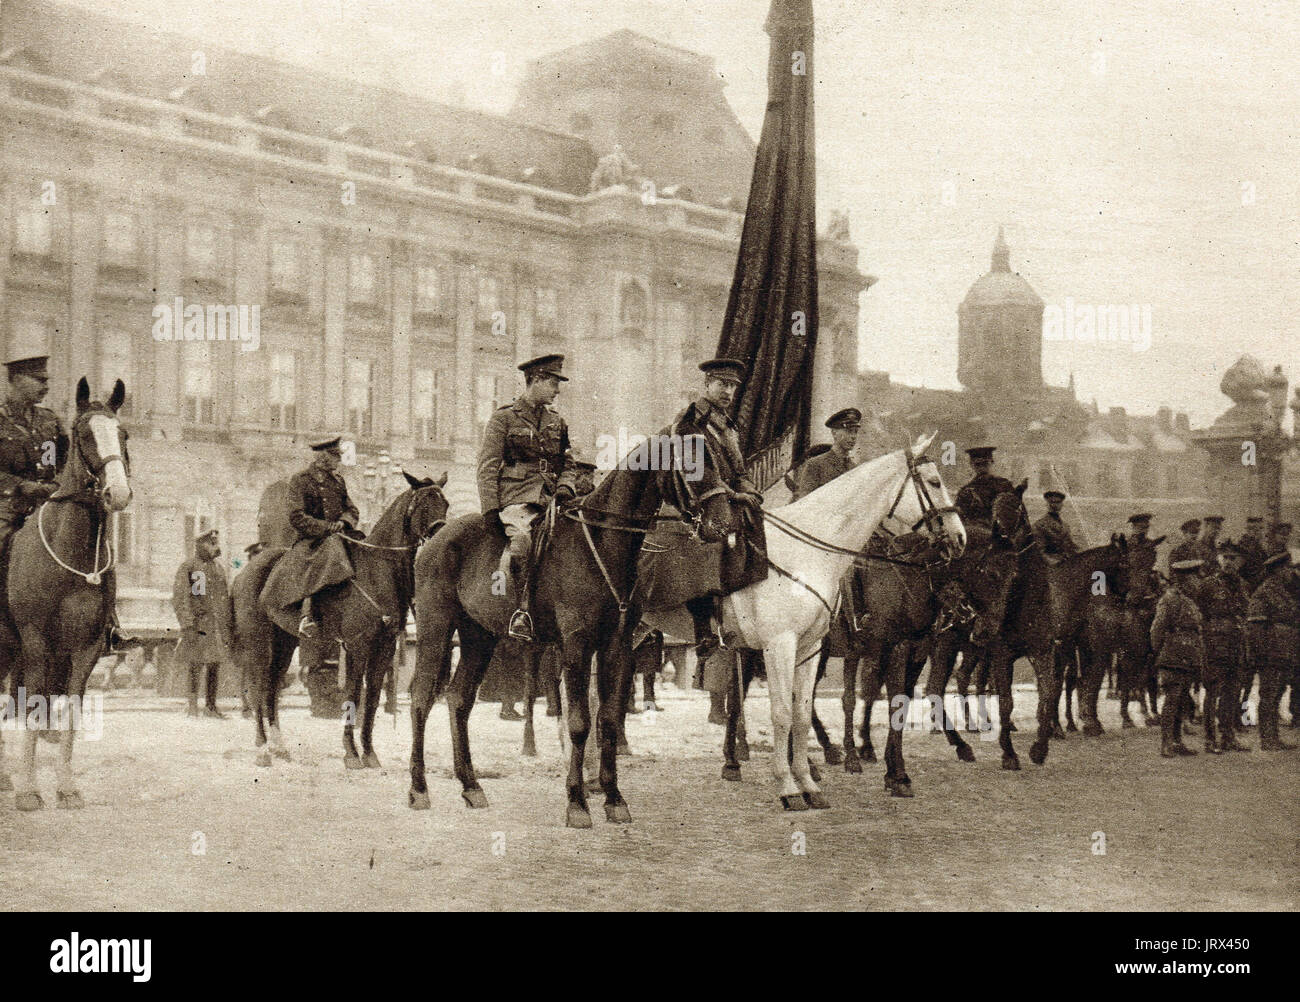 El rey Albert, el príncipe Albert & Príncipe de Gales (futuro Rey Eduardo VIII) revisando las tropas británicas en bruselas Foto de stock